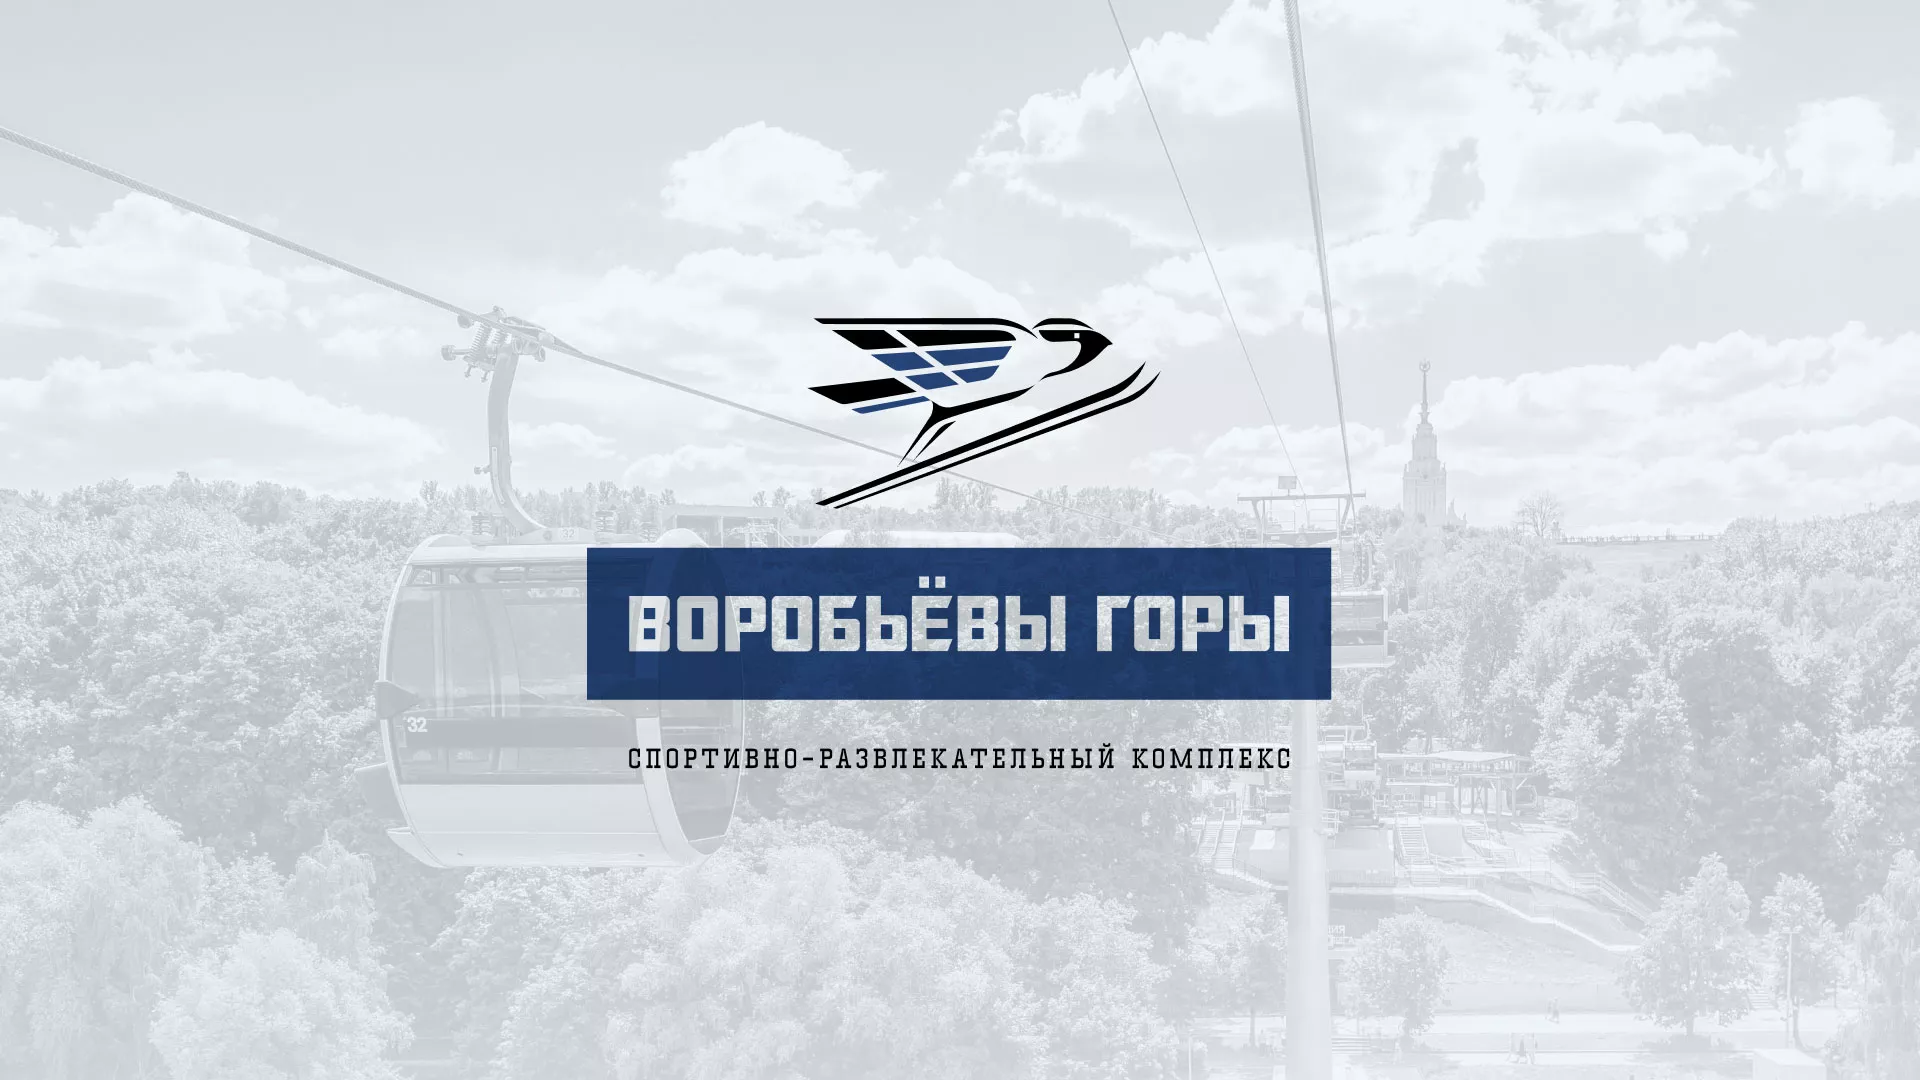 Разработка сайта в Лосино-Петровске для спортивно-развлекательного комплекса «Воробьёвы горы»